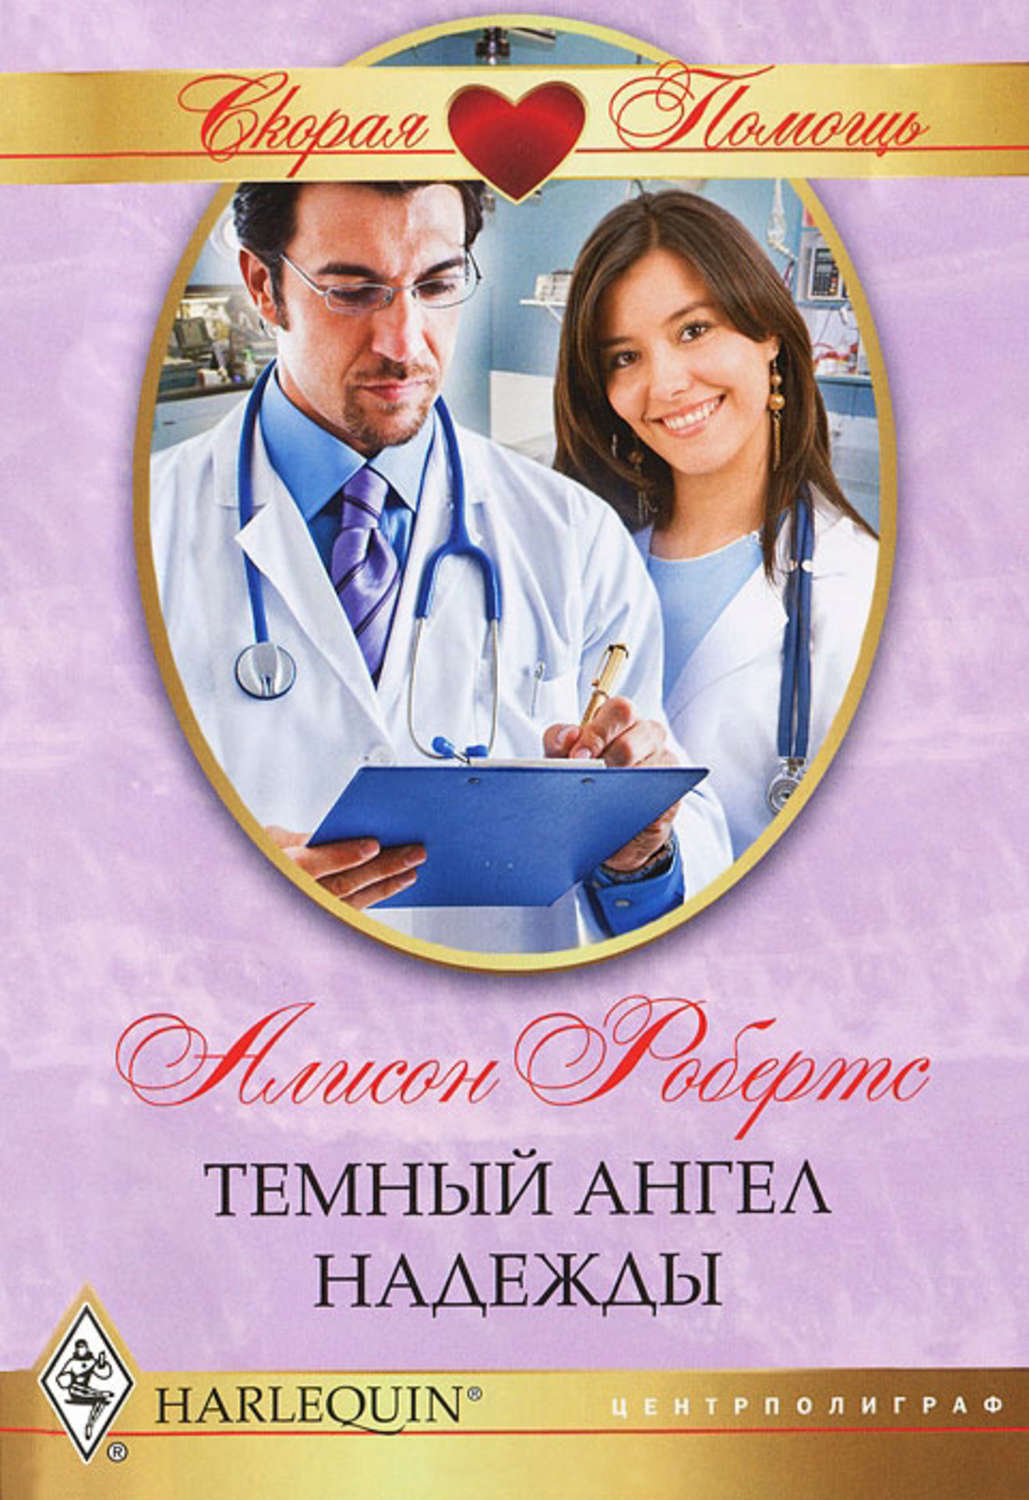 Любовные романы читать врач. Любовные романы про врачей. Современные романы про врачей. Современные любовные романы про врачей.